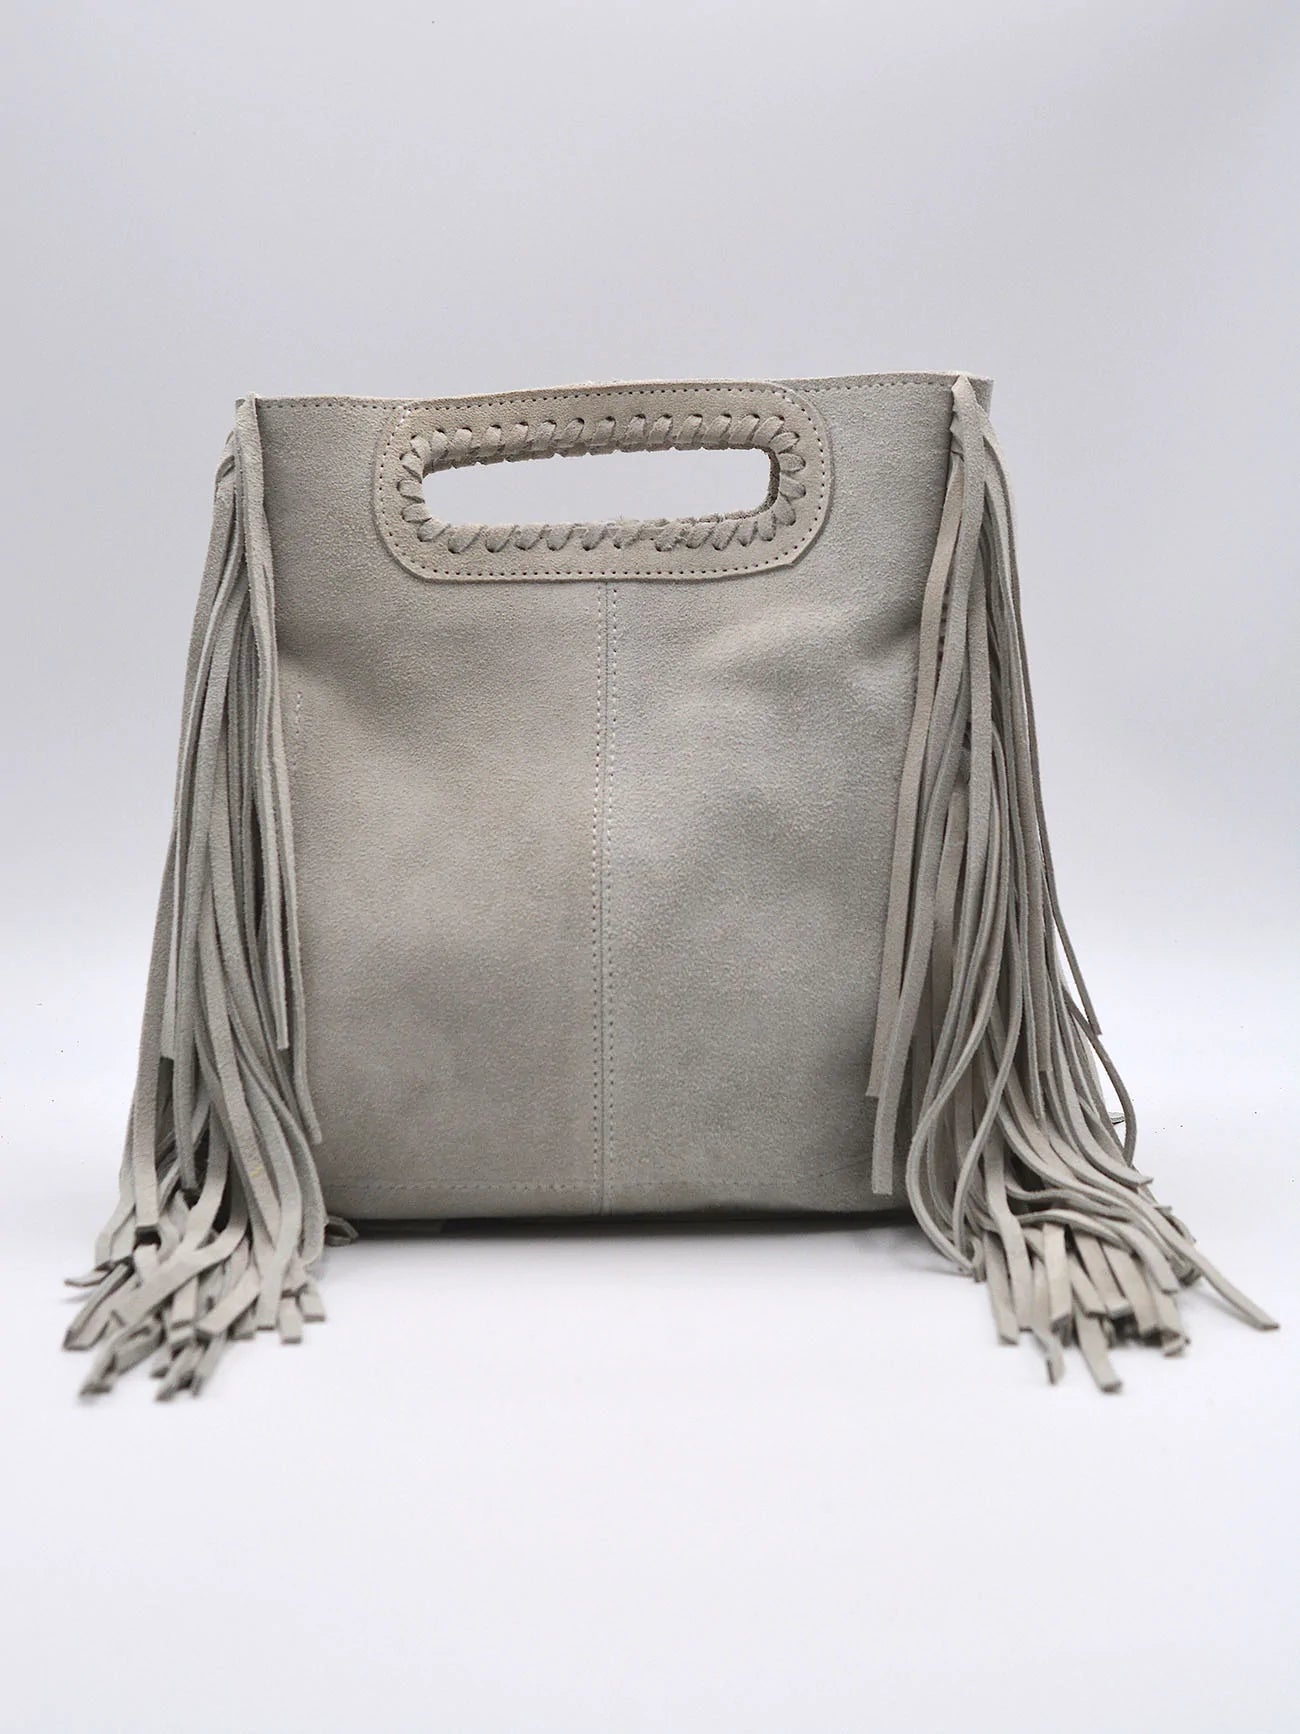 The Argentina Leather Fringe Mini Handbag